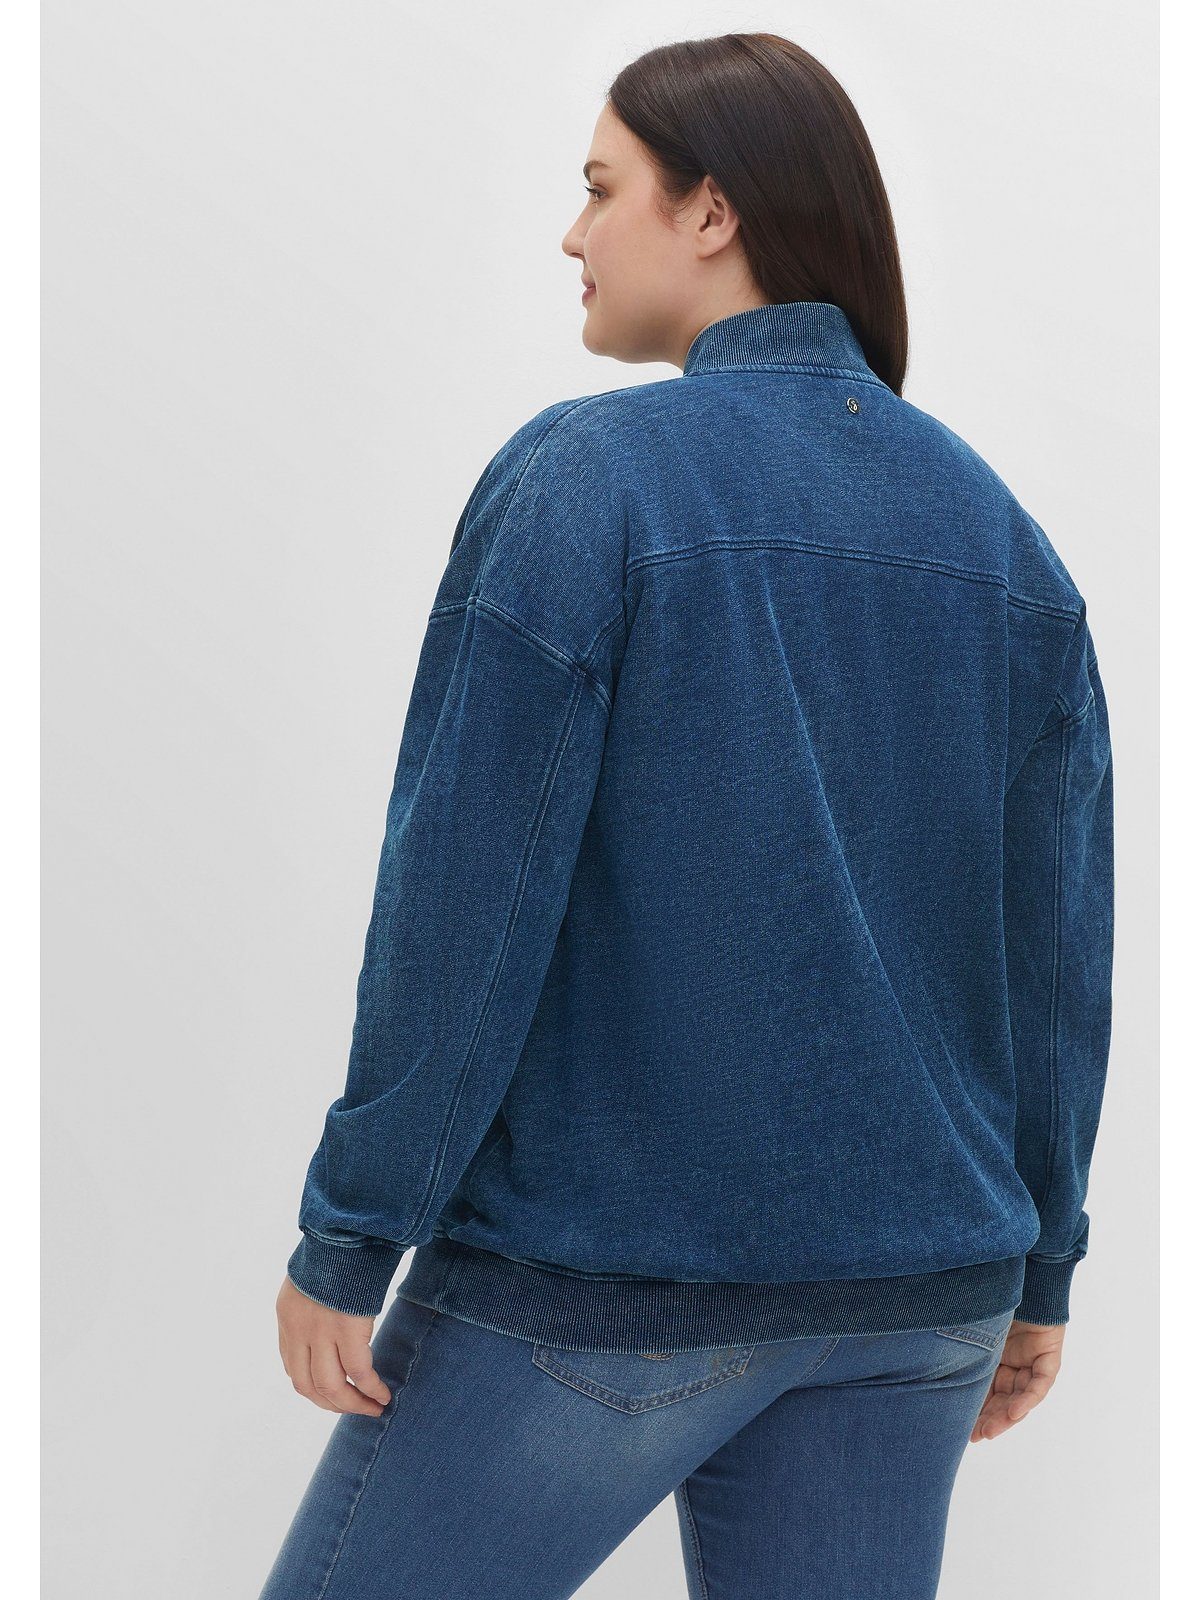 Sheego Sweatjacke Große Größen in Brusttaschen mit Jeansoptik